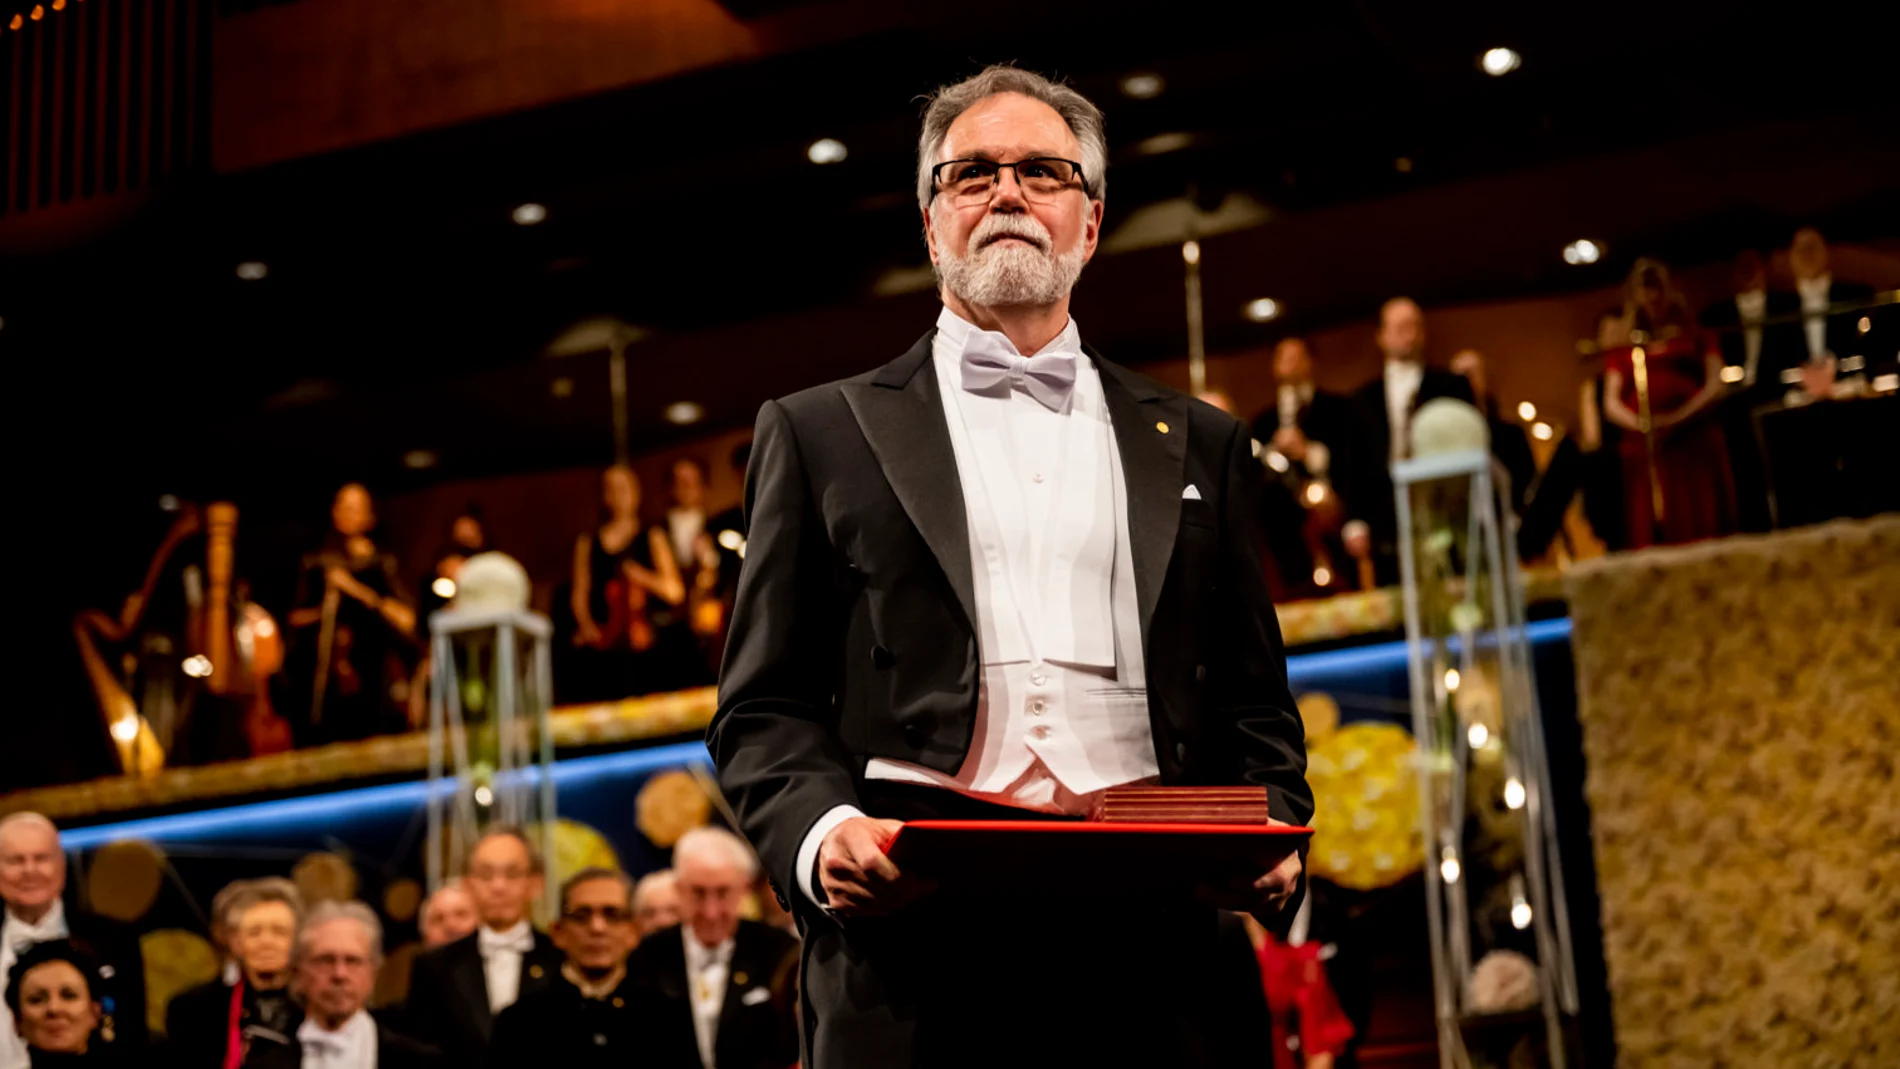 Gregg Semenza tras recibir el premio Nobel en Konserthuset, Estocolmo, el 10 de diciembre de 2019.